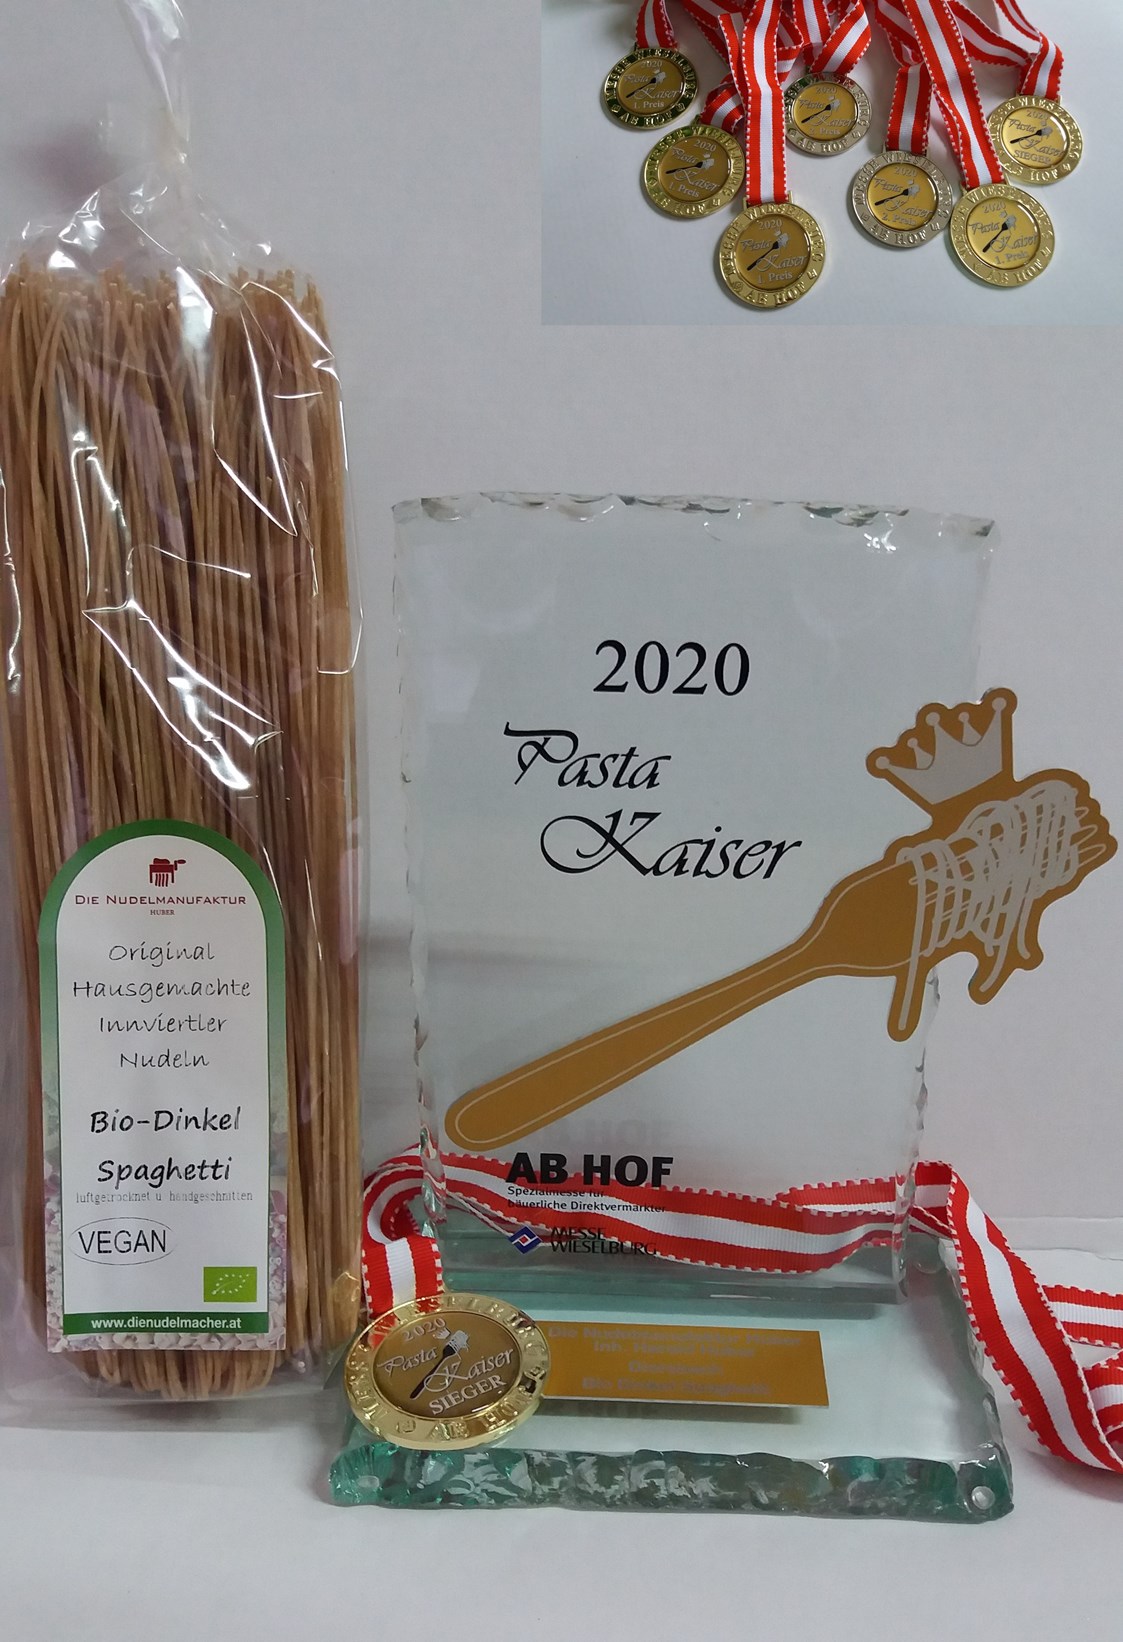 Unternehmen: Pasta Kaiser 2020 bei der Messe Wieselburg (Bio Dinkel Spaghetti)
Nudelmanfaktur Huber - Nudelmanufaktur Huber